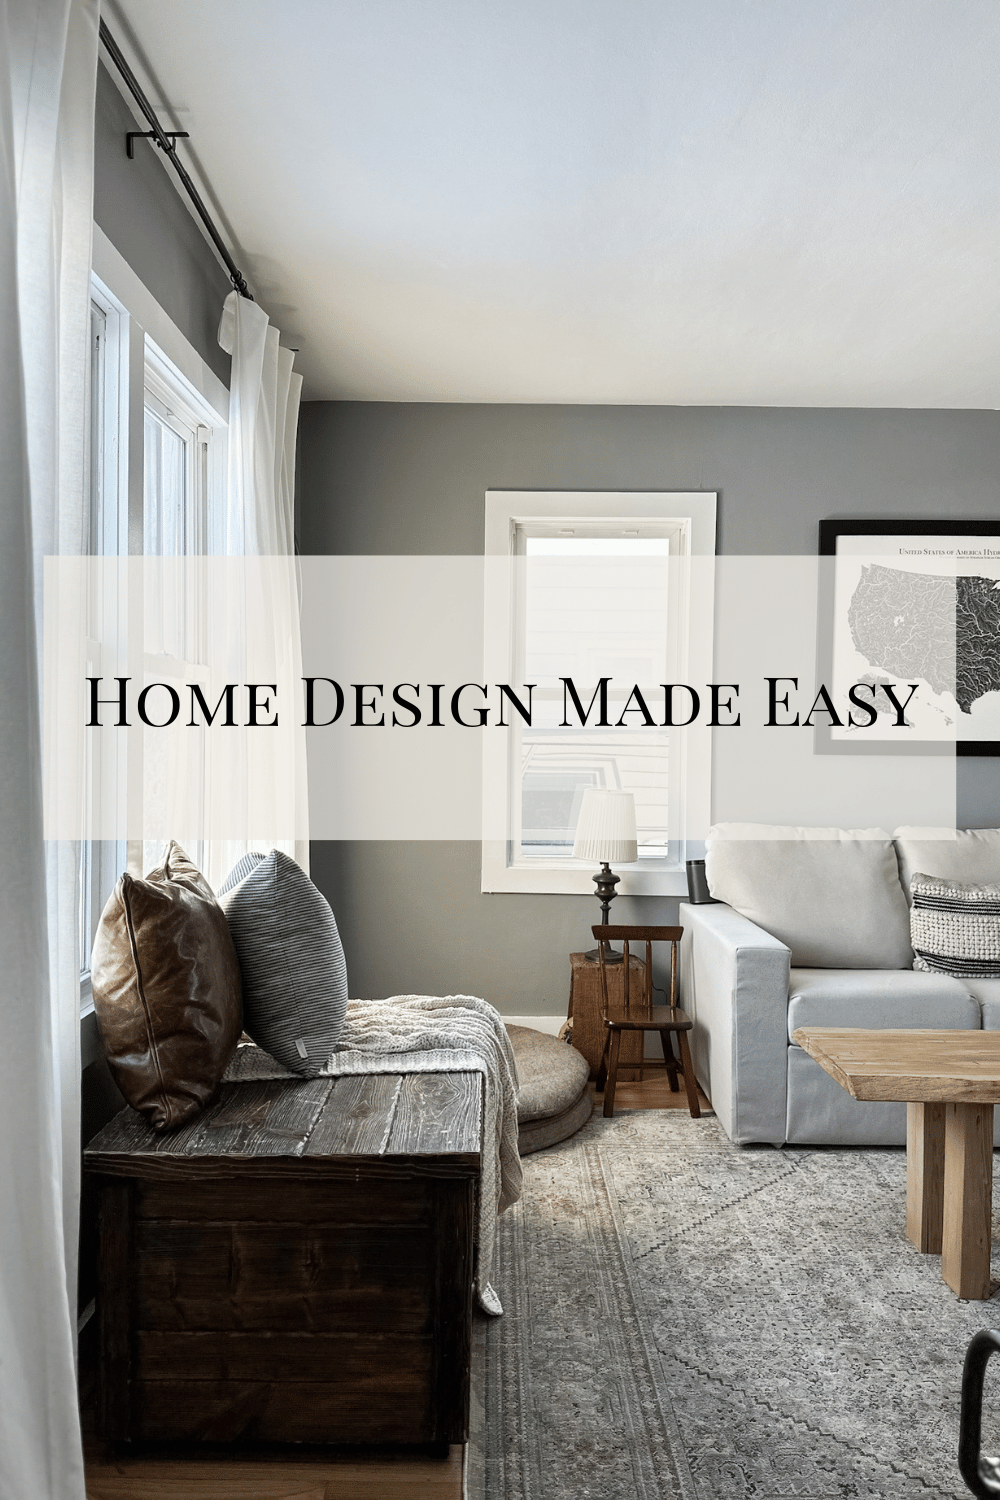 Home Design Made Easy